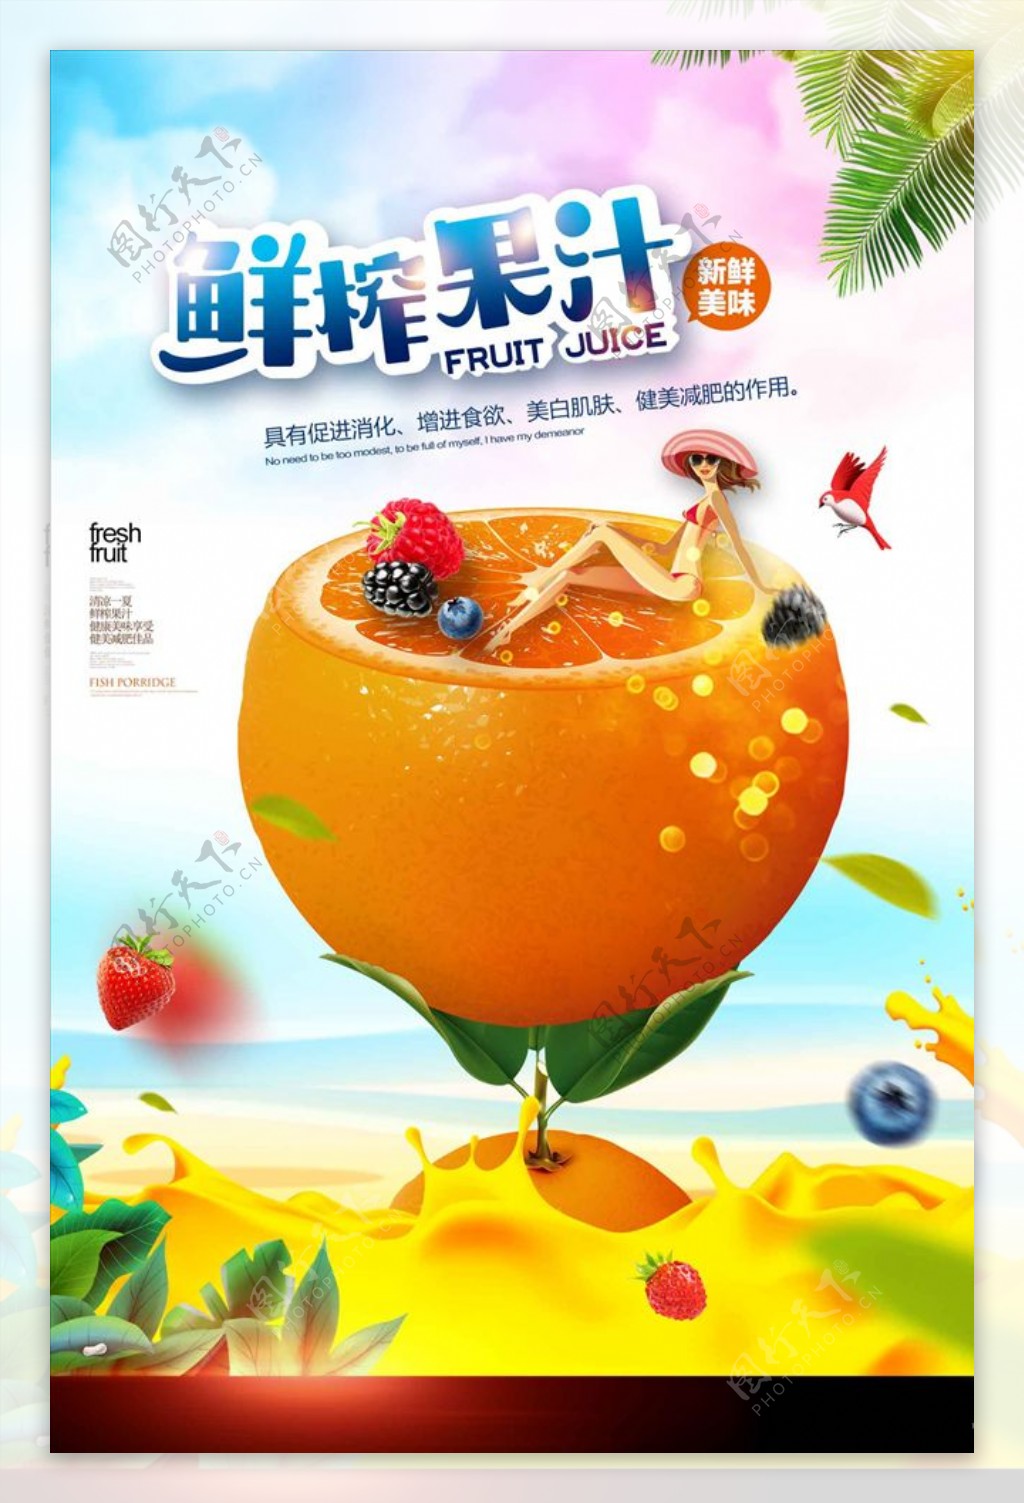 夏日冻饮鲜榨果汁宣传海报